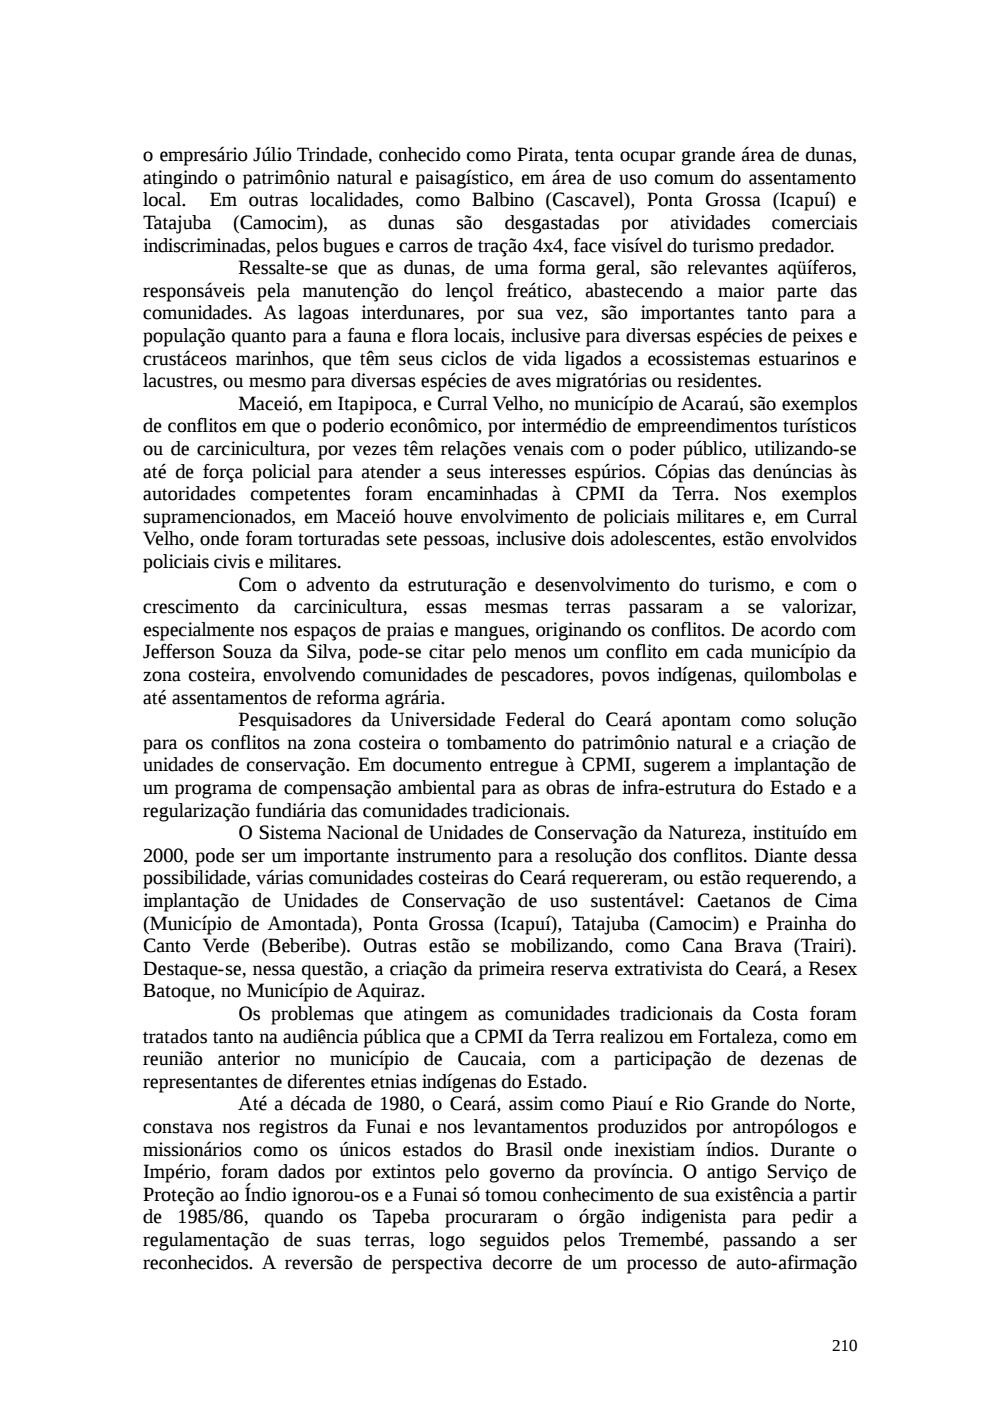 Page 210 from Relatório final da comissão